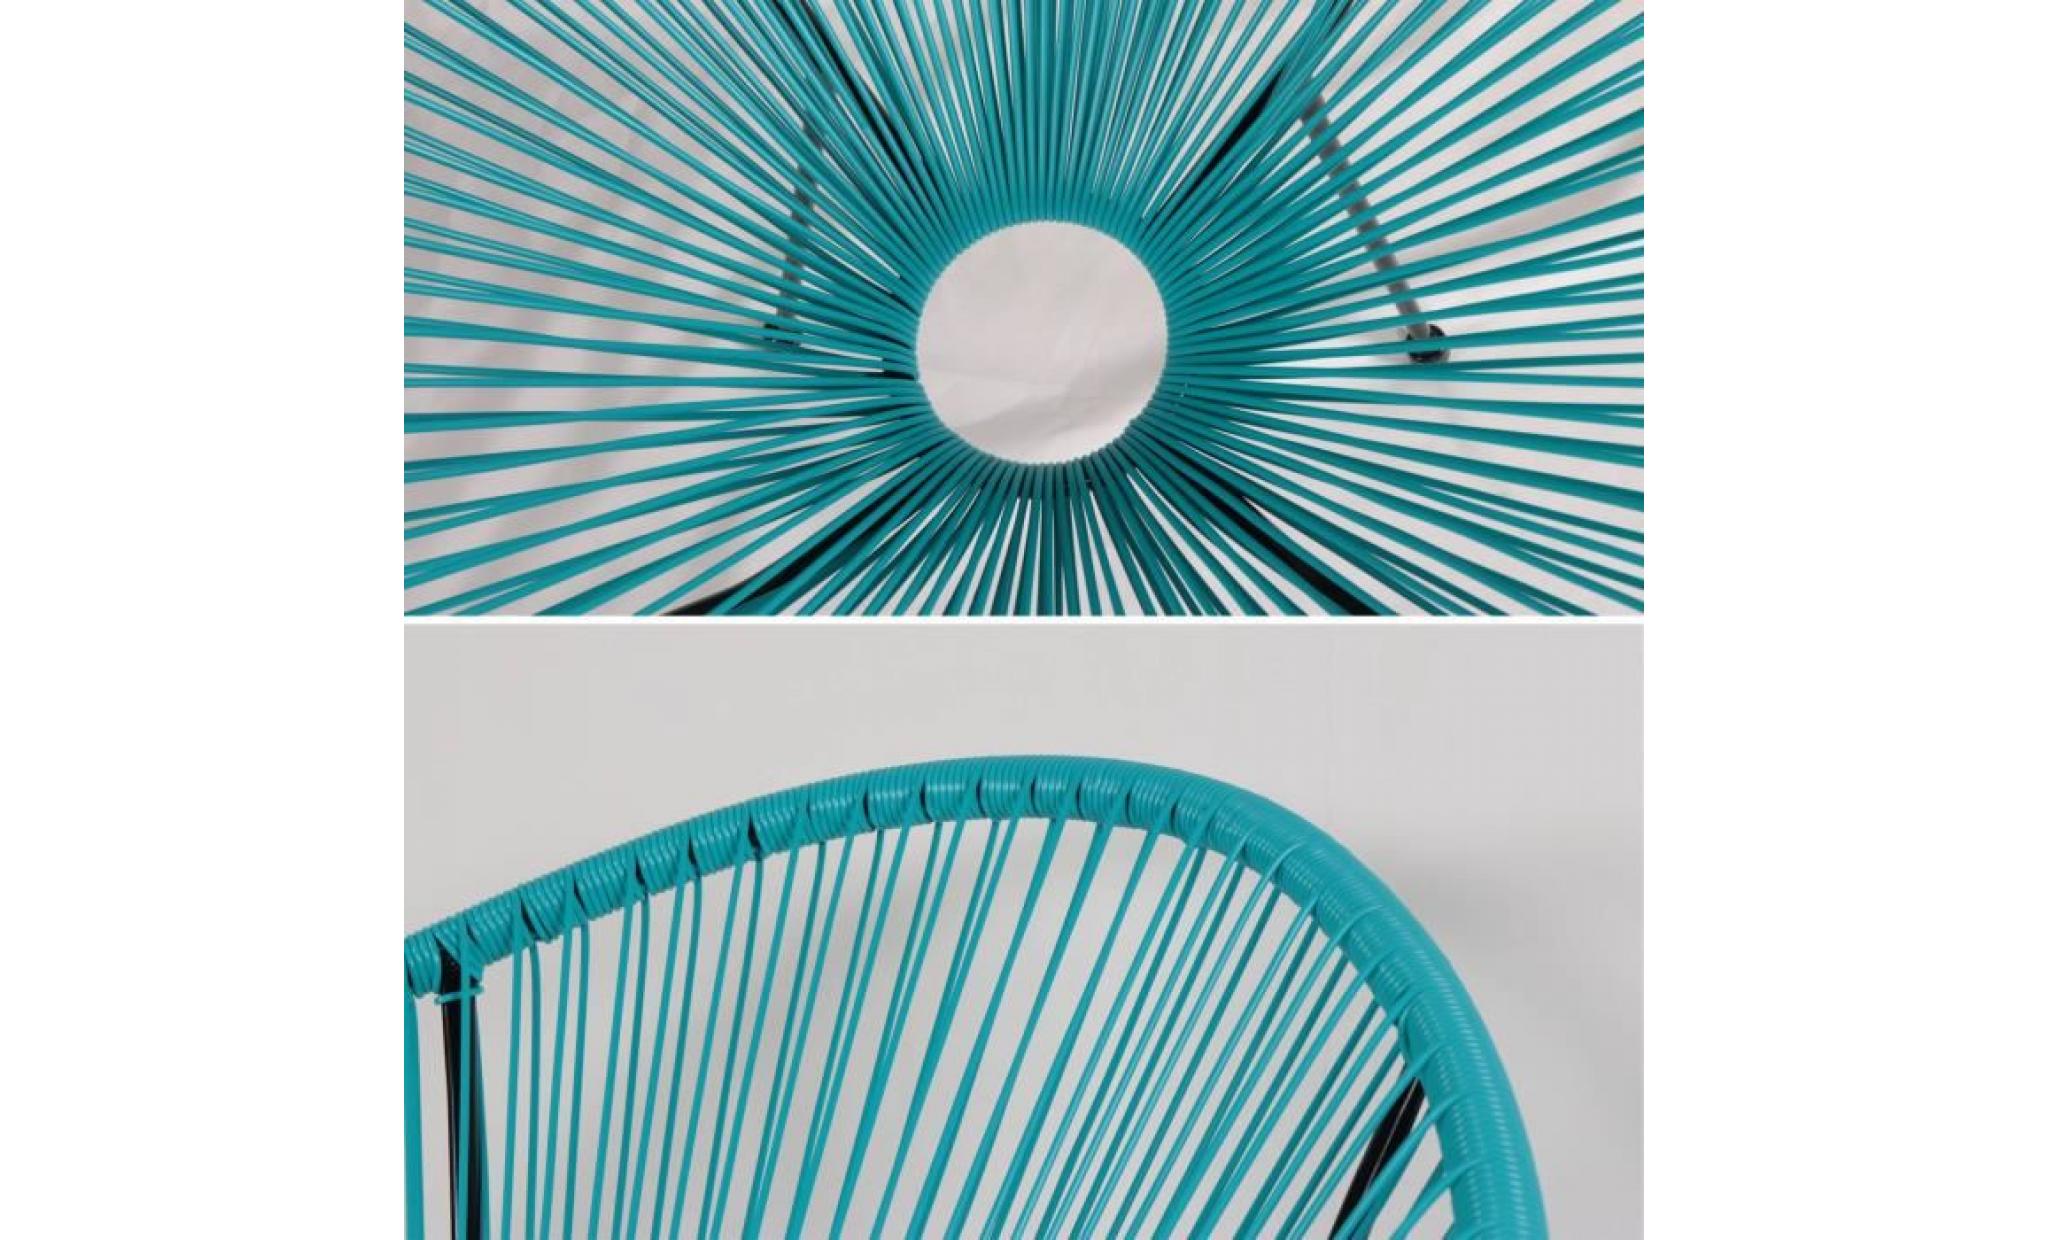 fauteuil acapulco forme d'oeuf   turquoise   fauteuil 4 pieds design rétro, cordage plastique, intérieur / extérieur pas cher